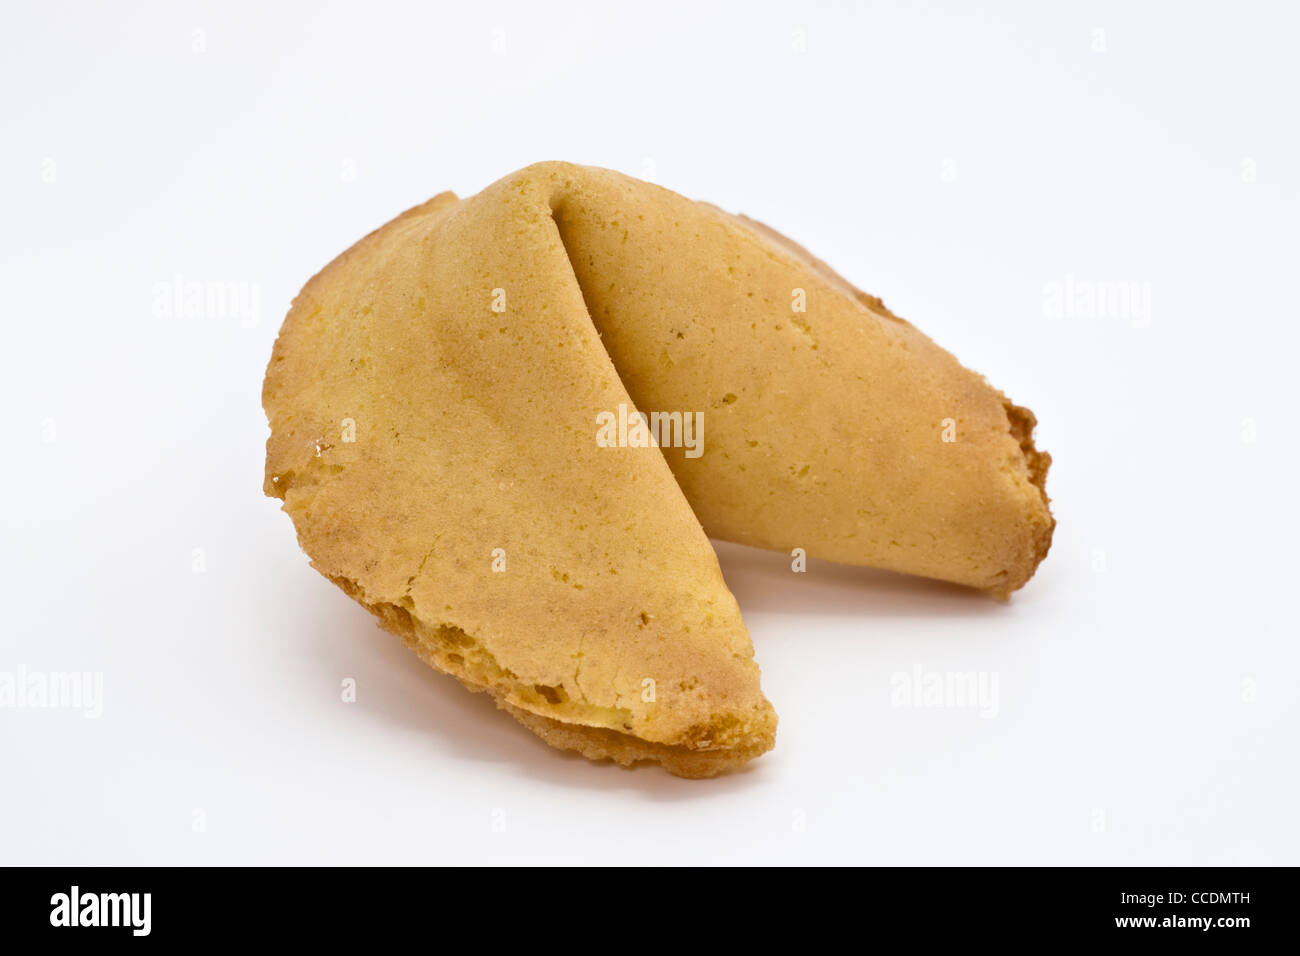 Detailansicht eines Glückskekses | Detailphoto of a fortune cookie Stock Photo